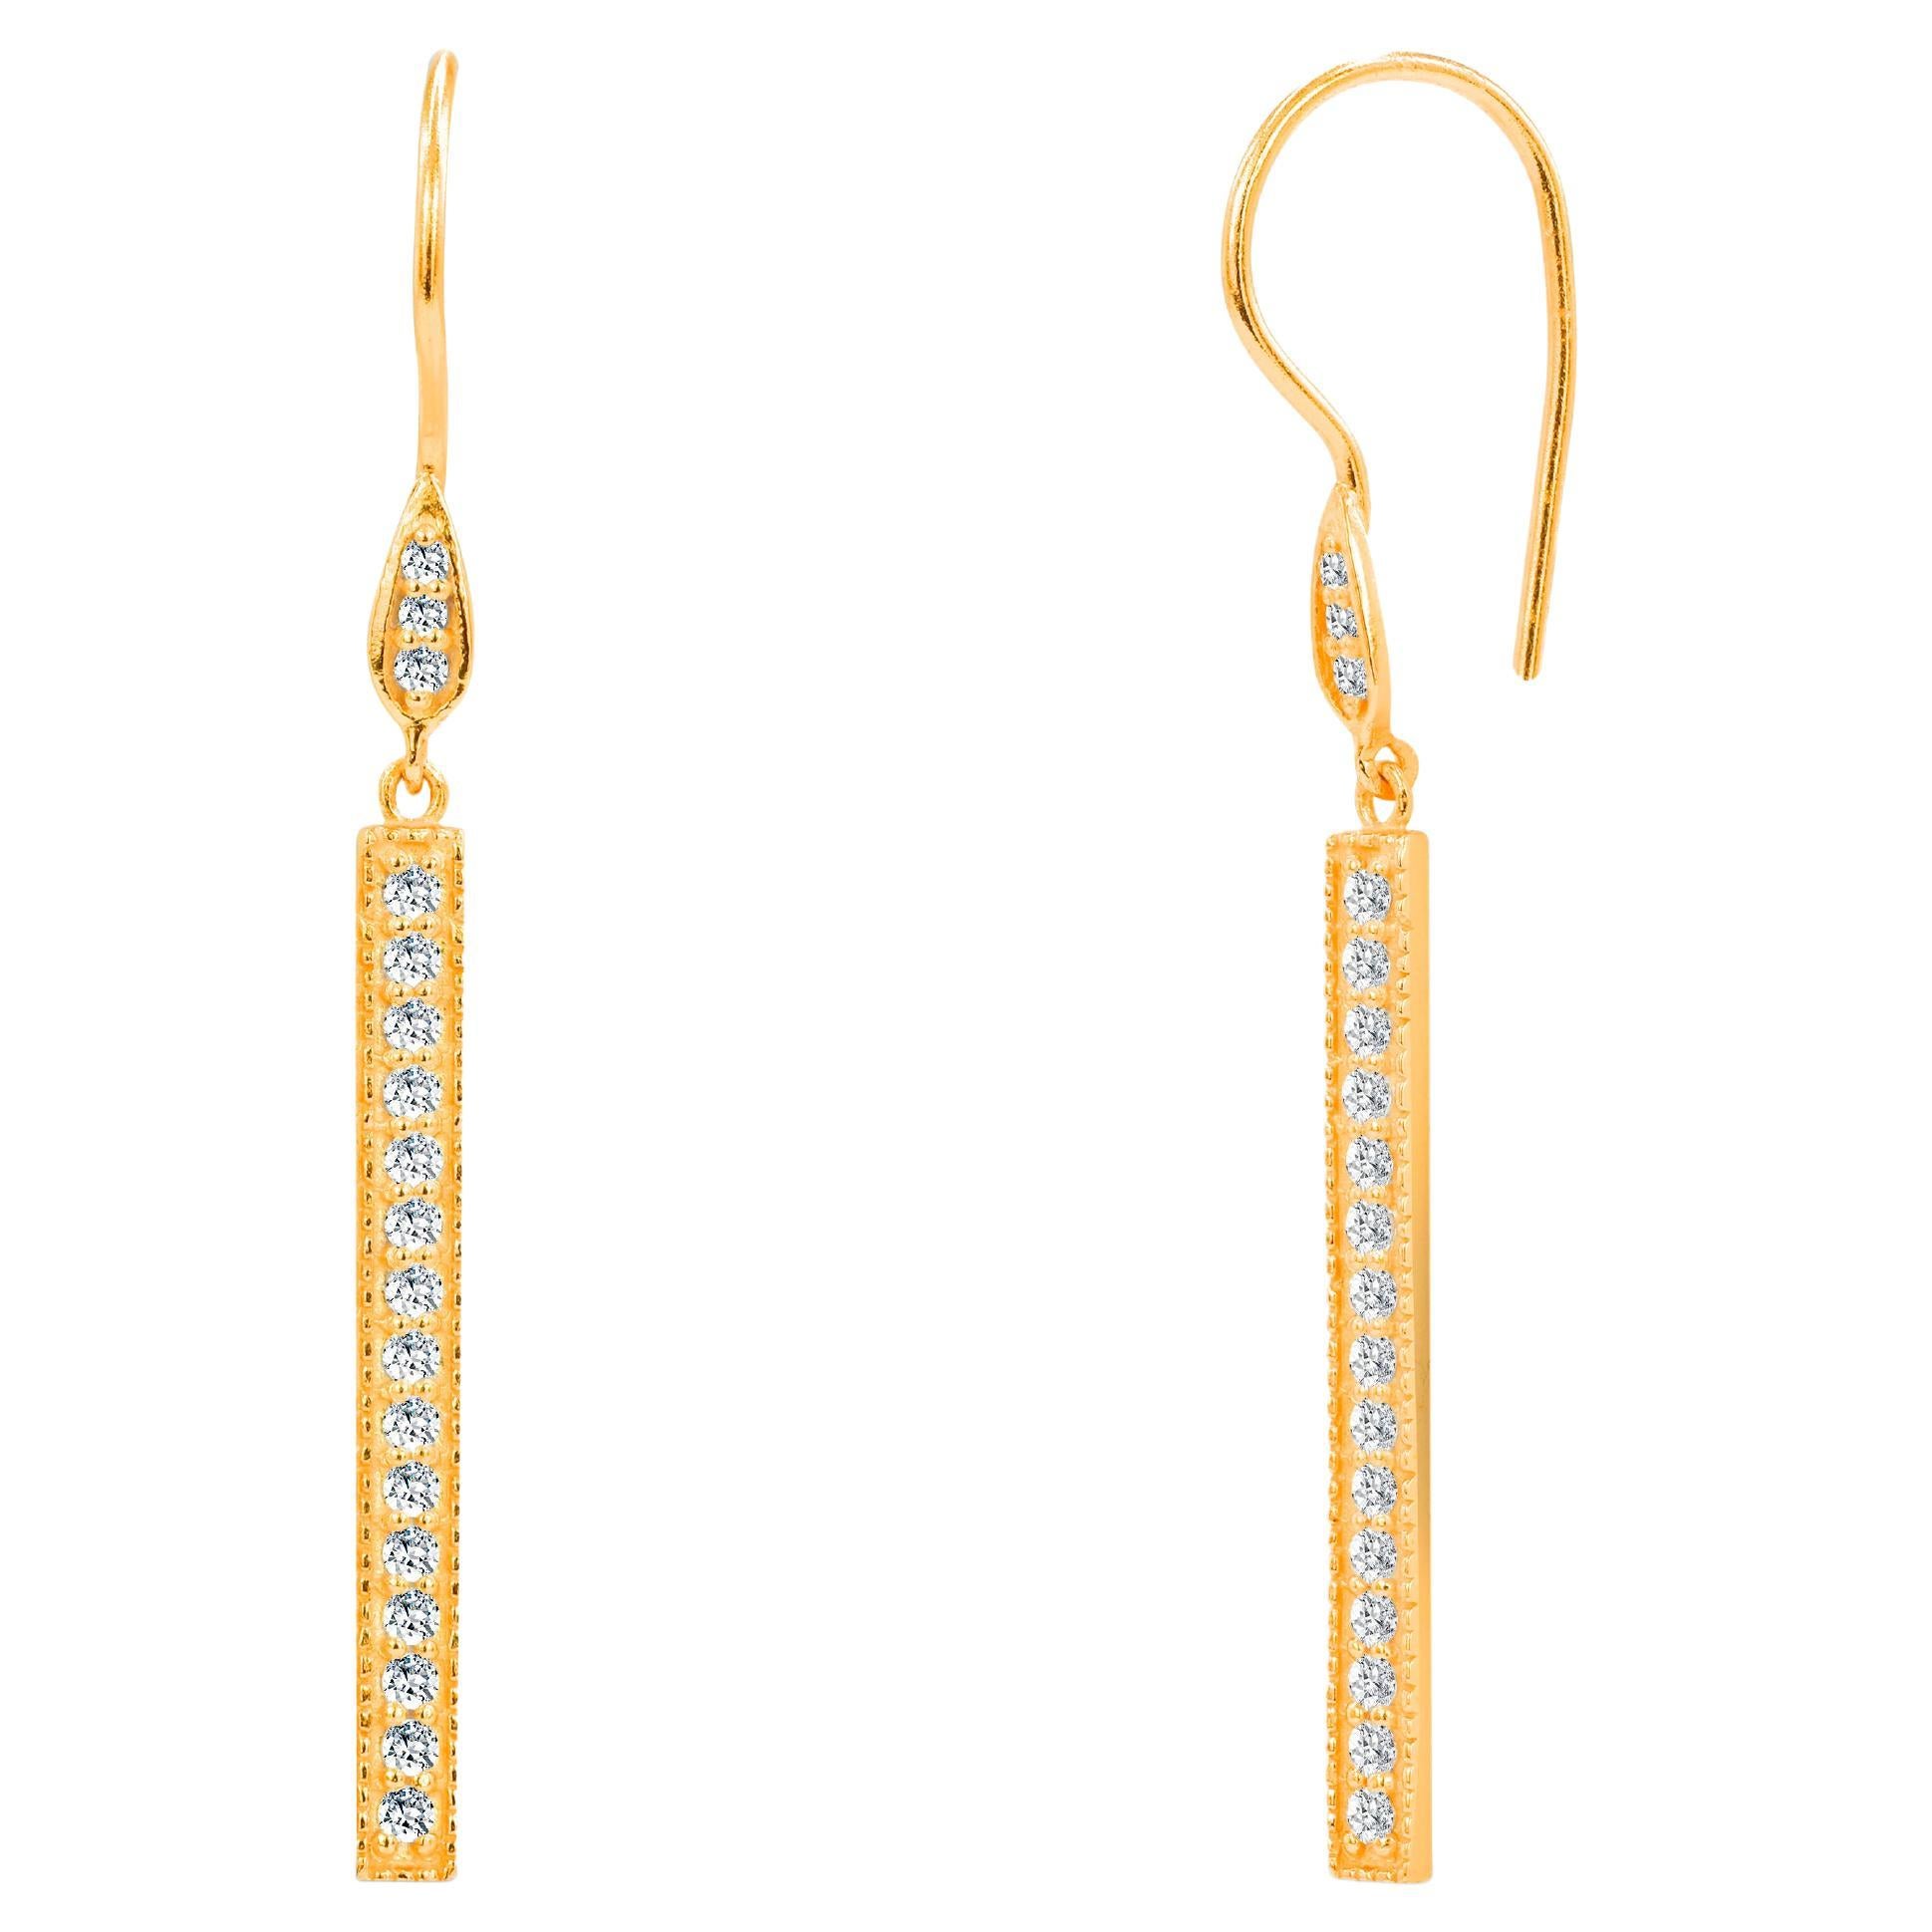 0.43ct Diamond Bar Dangle Earrings in 18k Gold